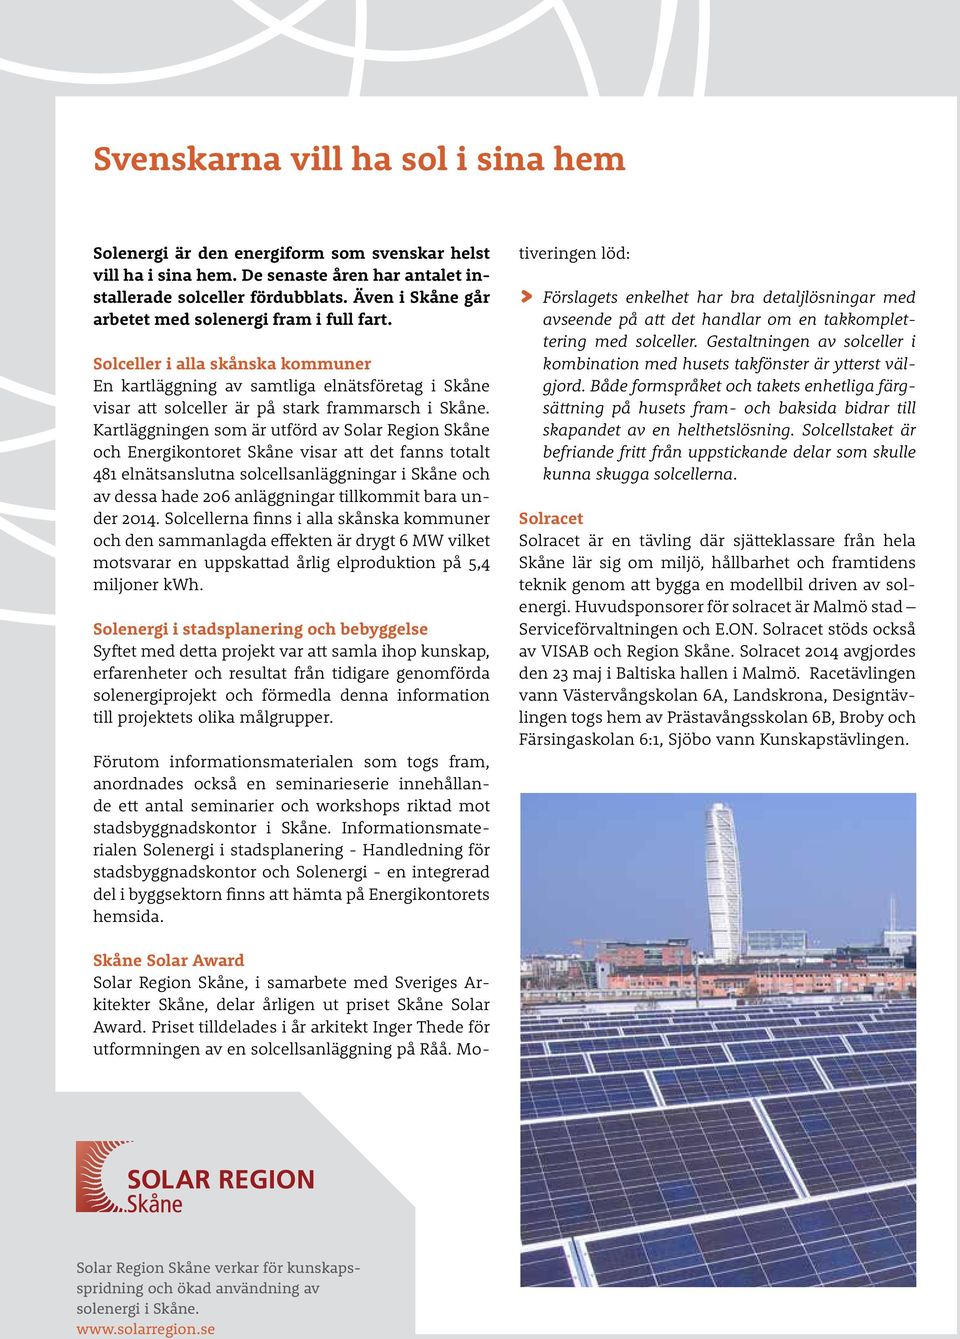 Kartläggningen som är utförd av Solar Region Skåne och Energikontoret Skåne visar att det fanns totalt 481 elnätsanslutna solcellsanläggningar i Skåne och av dessa hade 206 anläggningar tillkommit